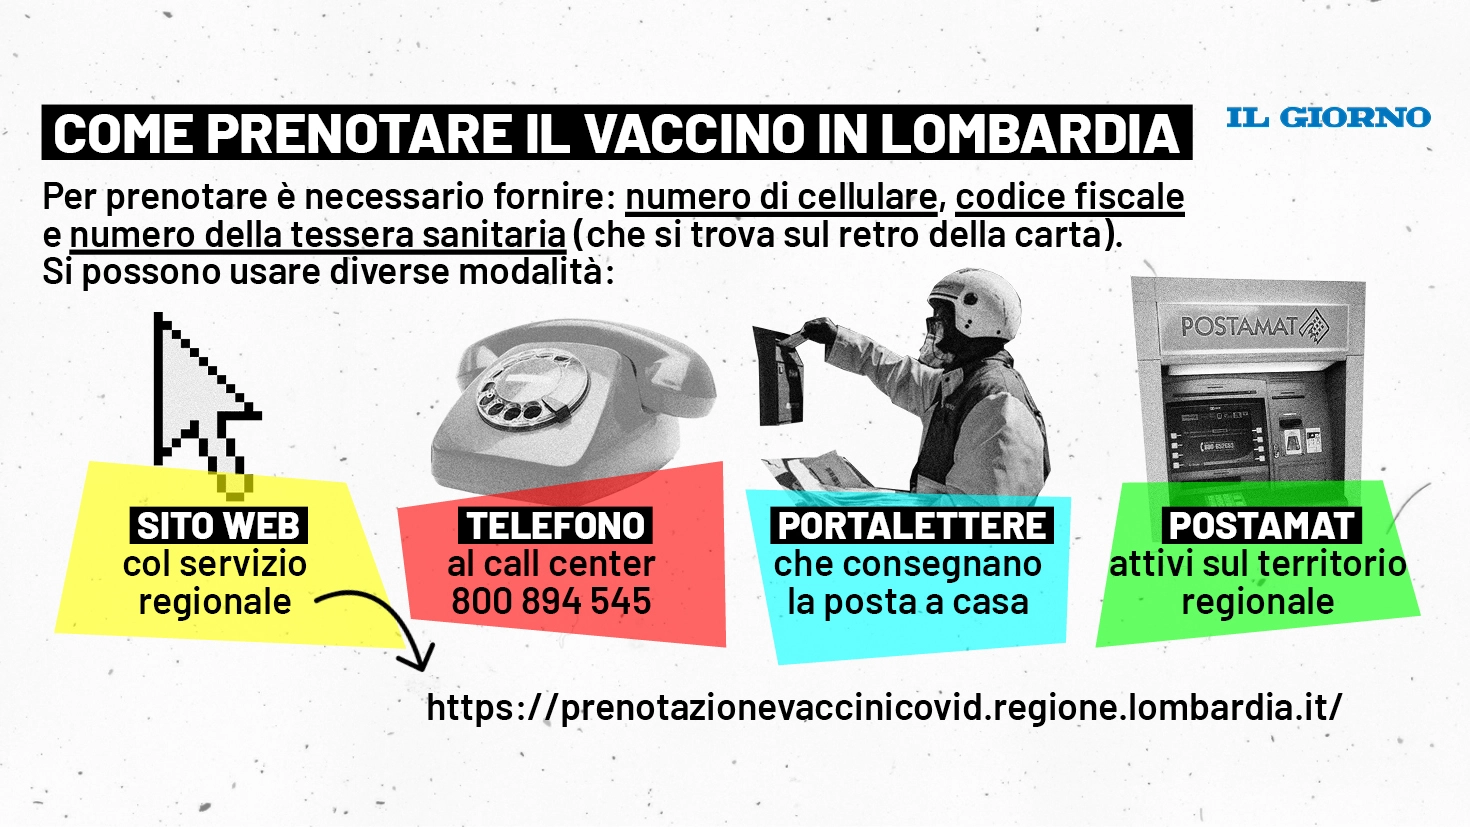 Le regole per prenotare il vaccino in Lombardia